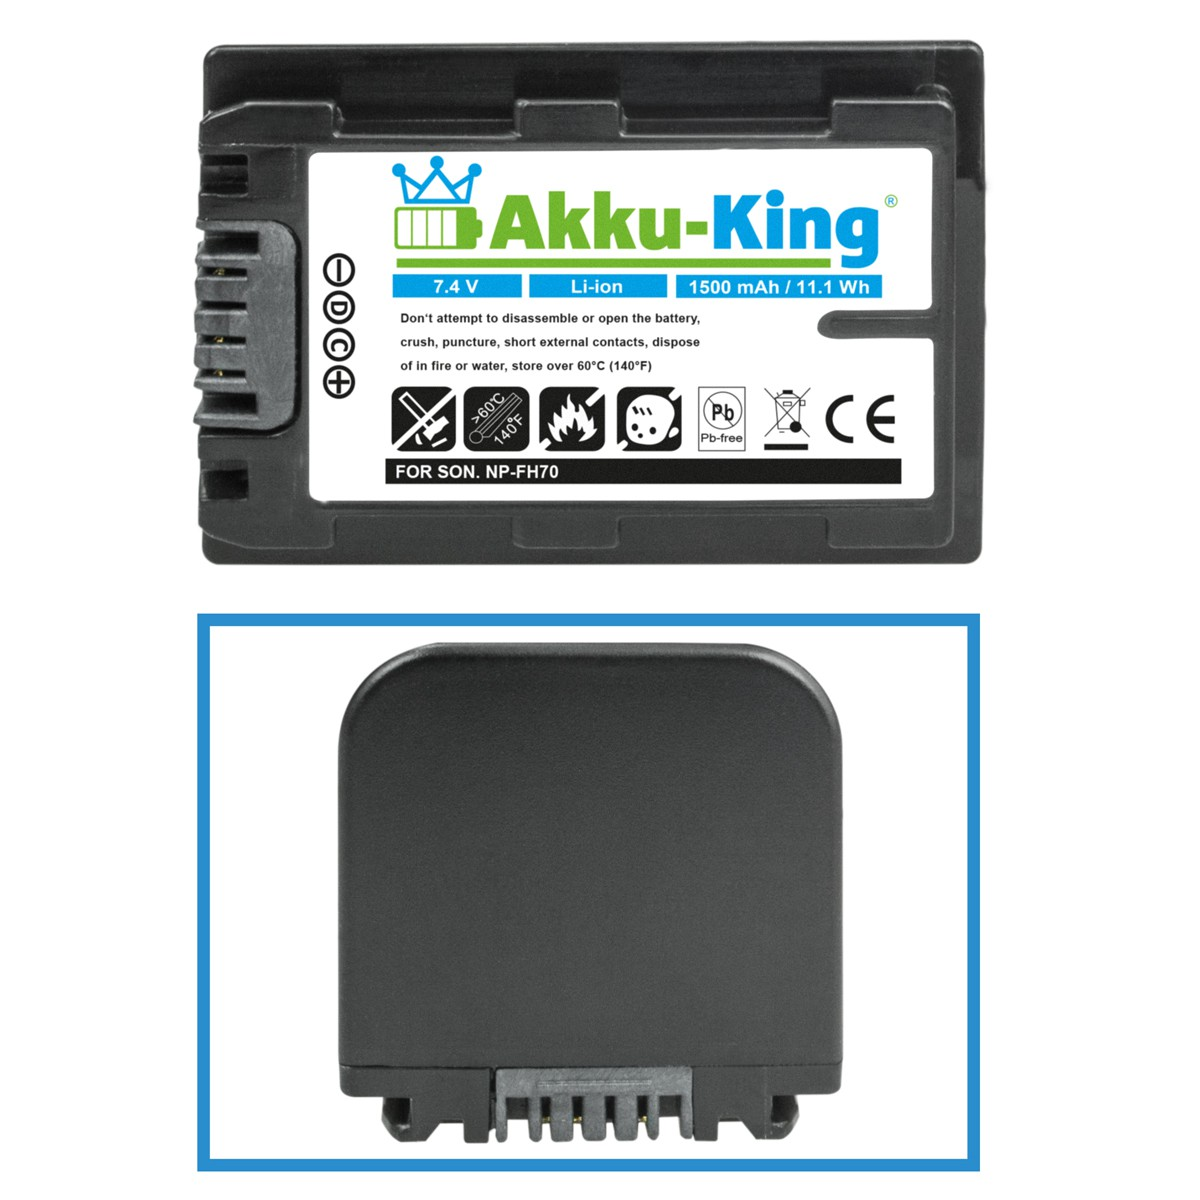 Volt, Akku Sony kompatibel NP-FH70 7.4 AKKU-KING mit Kamera-Akku, 1500mAh Li-Ion